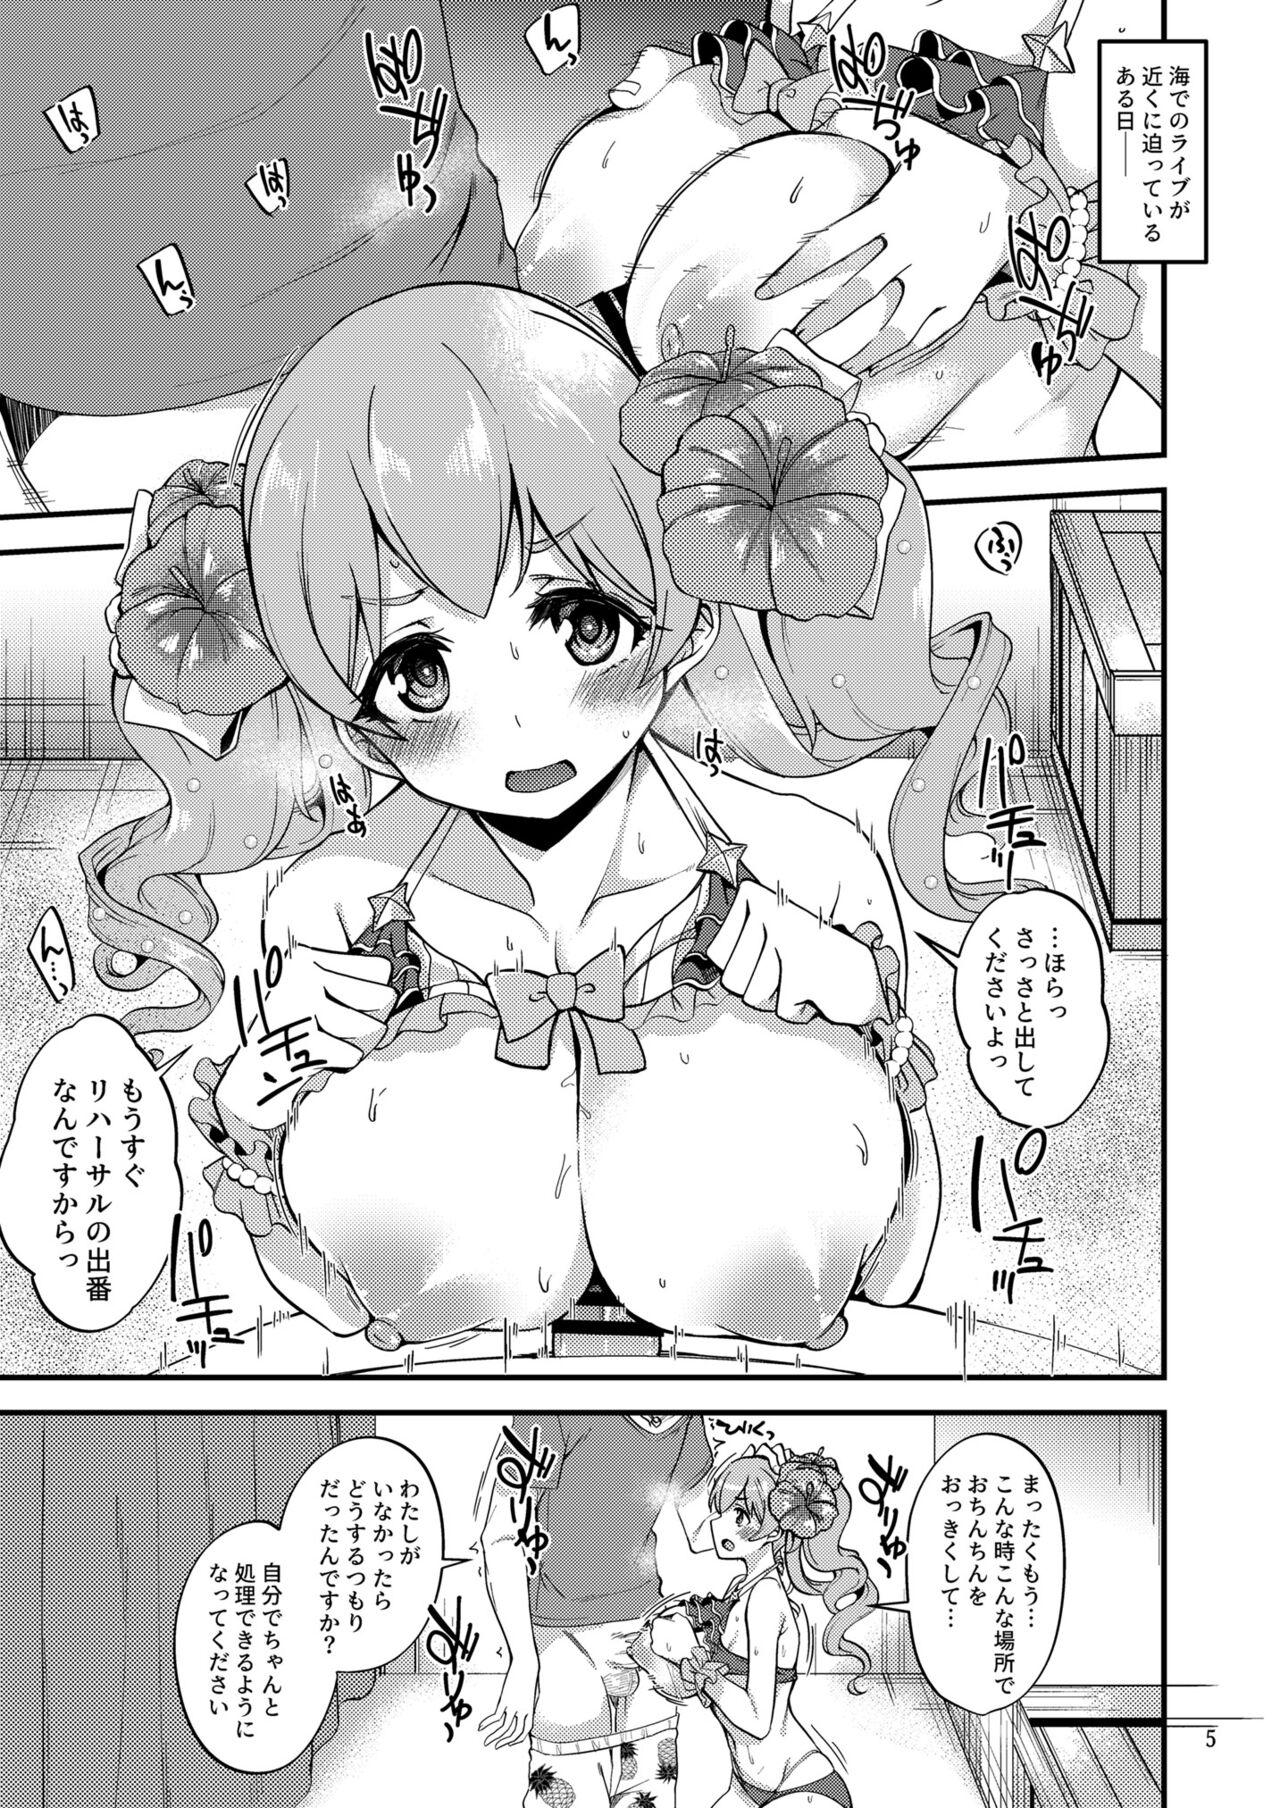 Bulge Tsumugi Make Heroine Move!! 07 - Princess connect Natural Boobs - Page 4